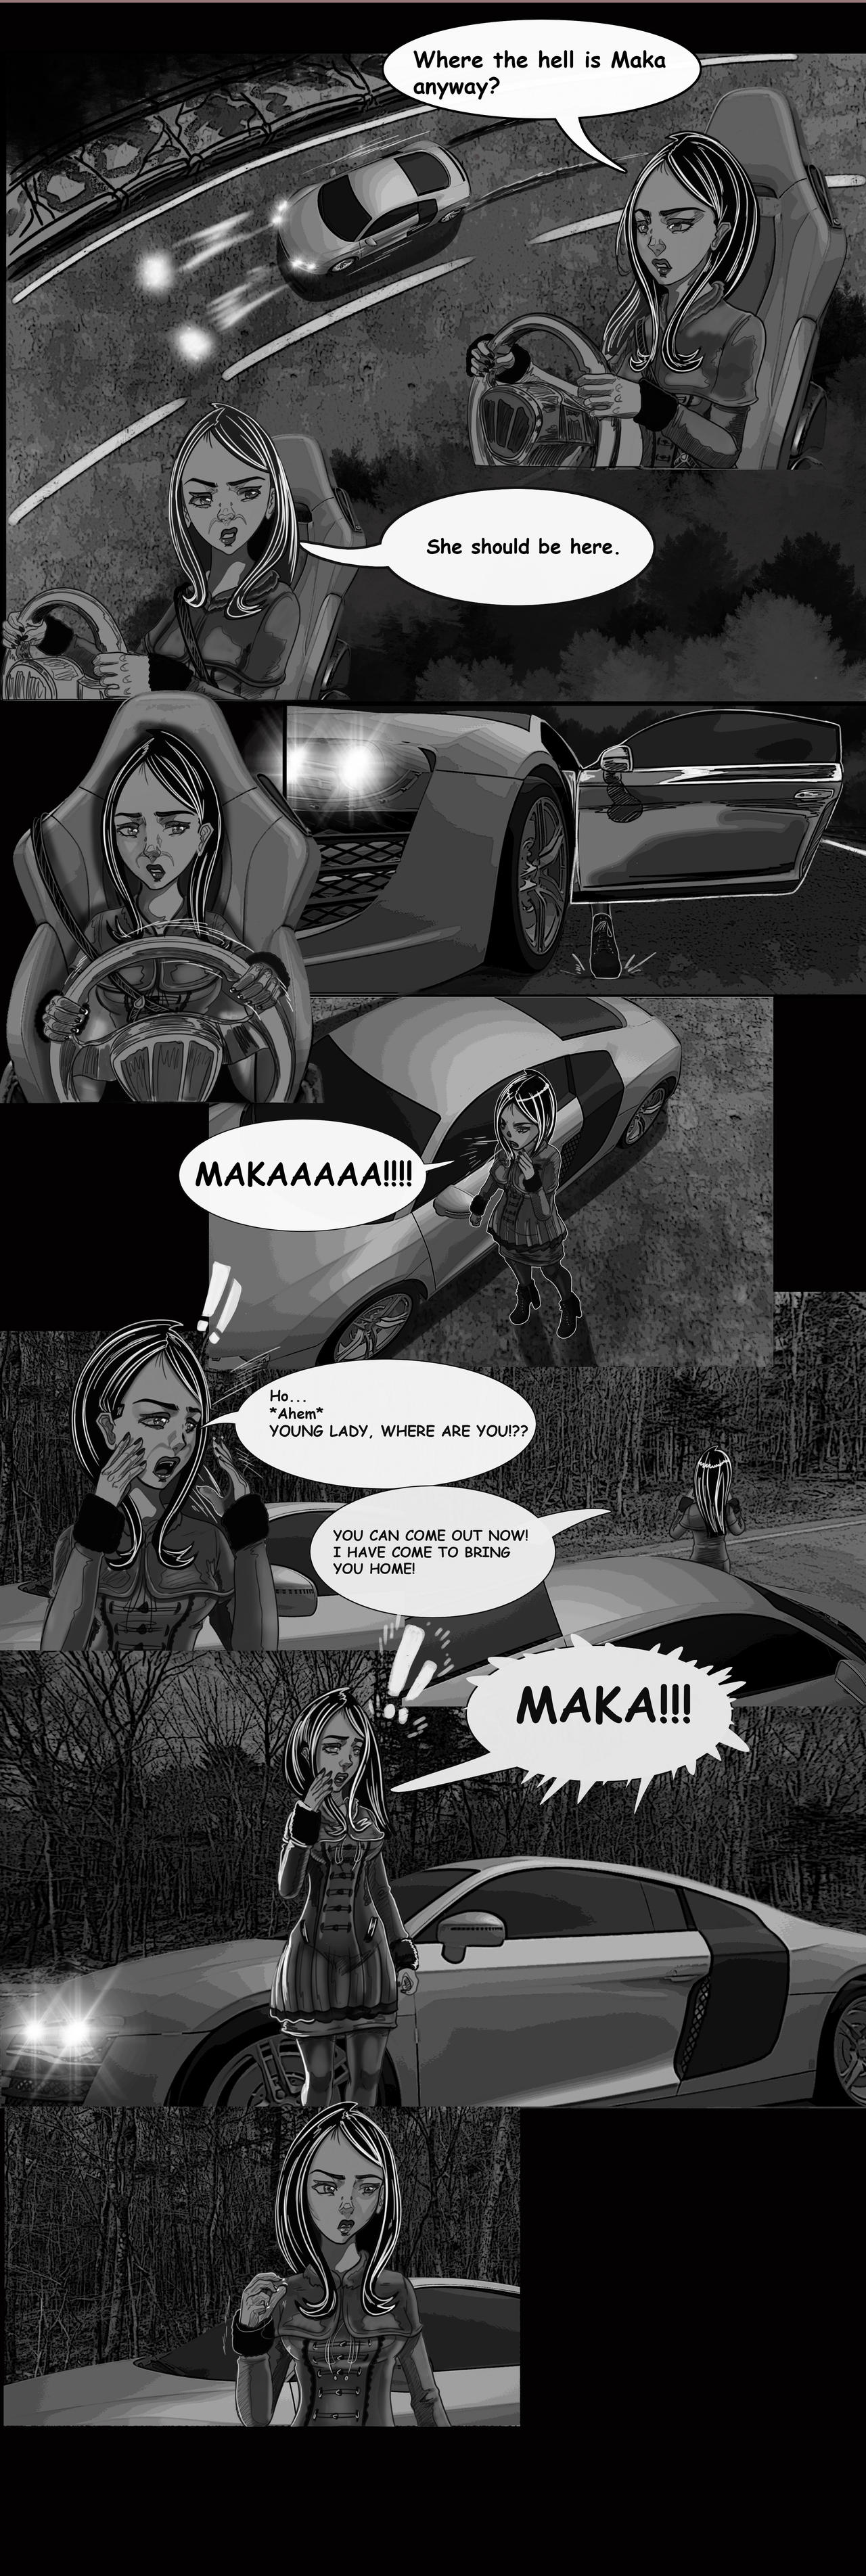 It's Maka! Not Baka!!! - Page 1